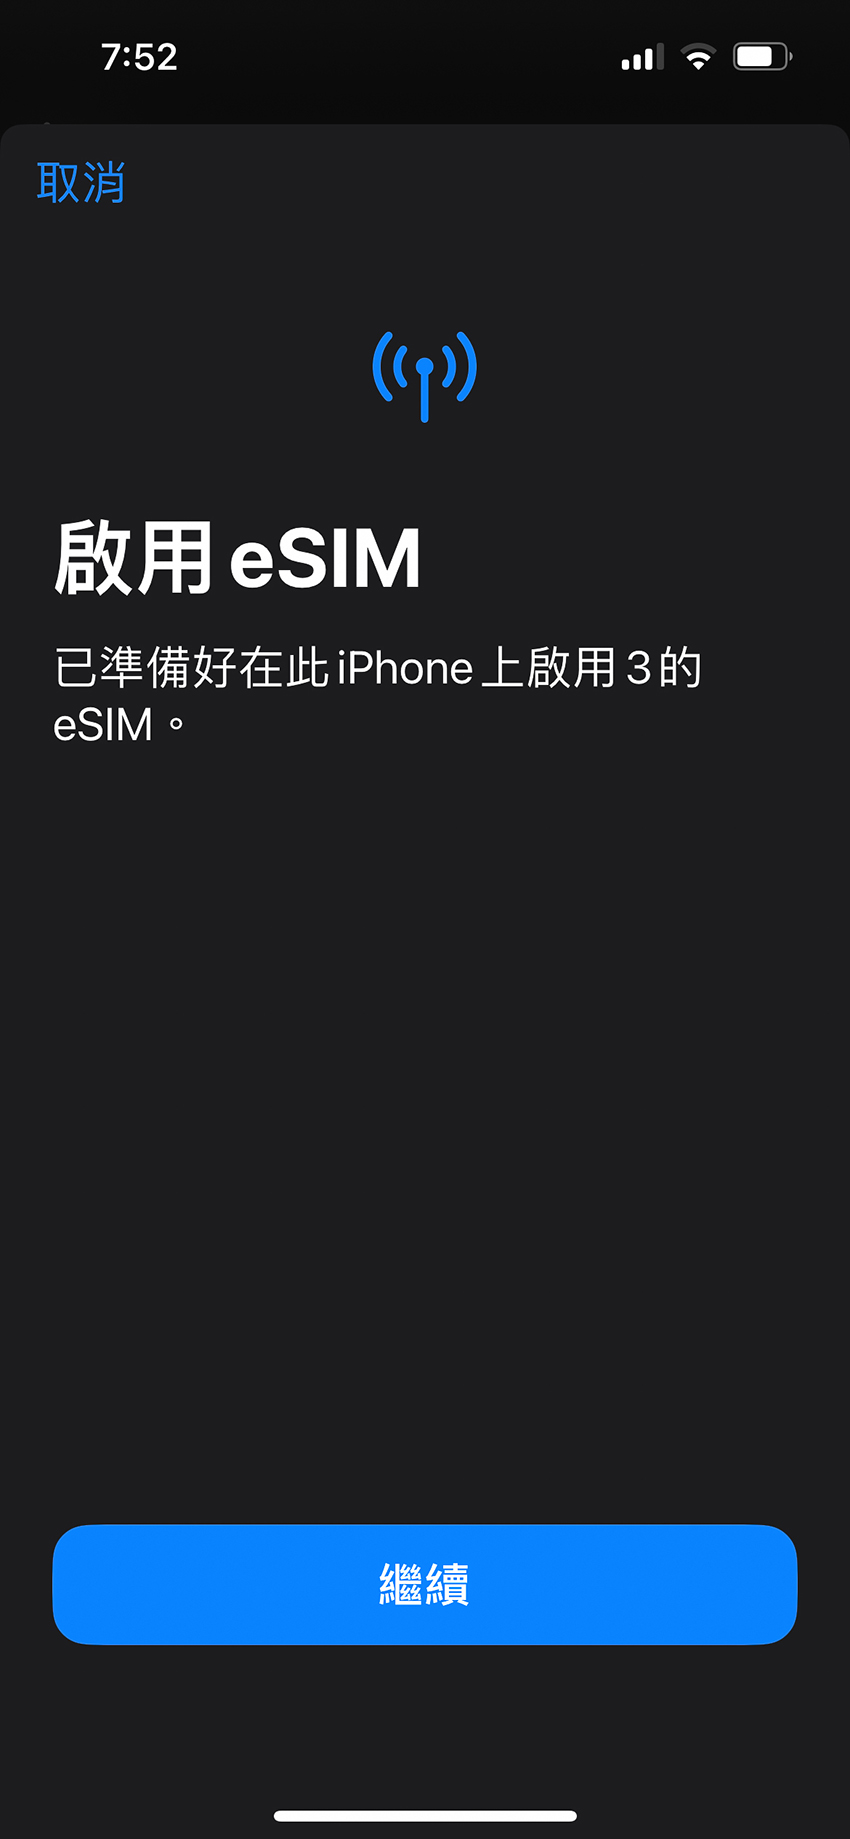 去日本旅遊改用eSIM，手機不用再換實體卡超方便！eSIM介紹、如何設定、適用手機